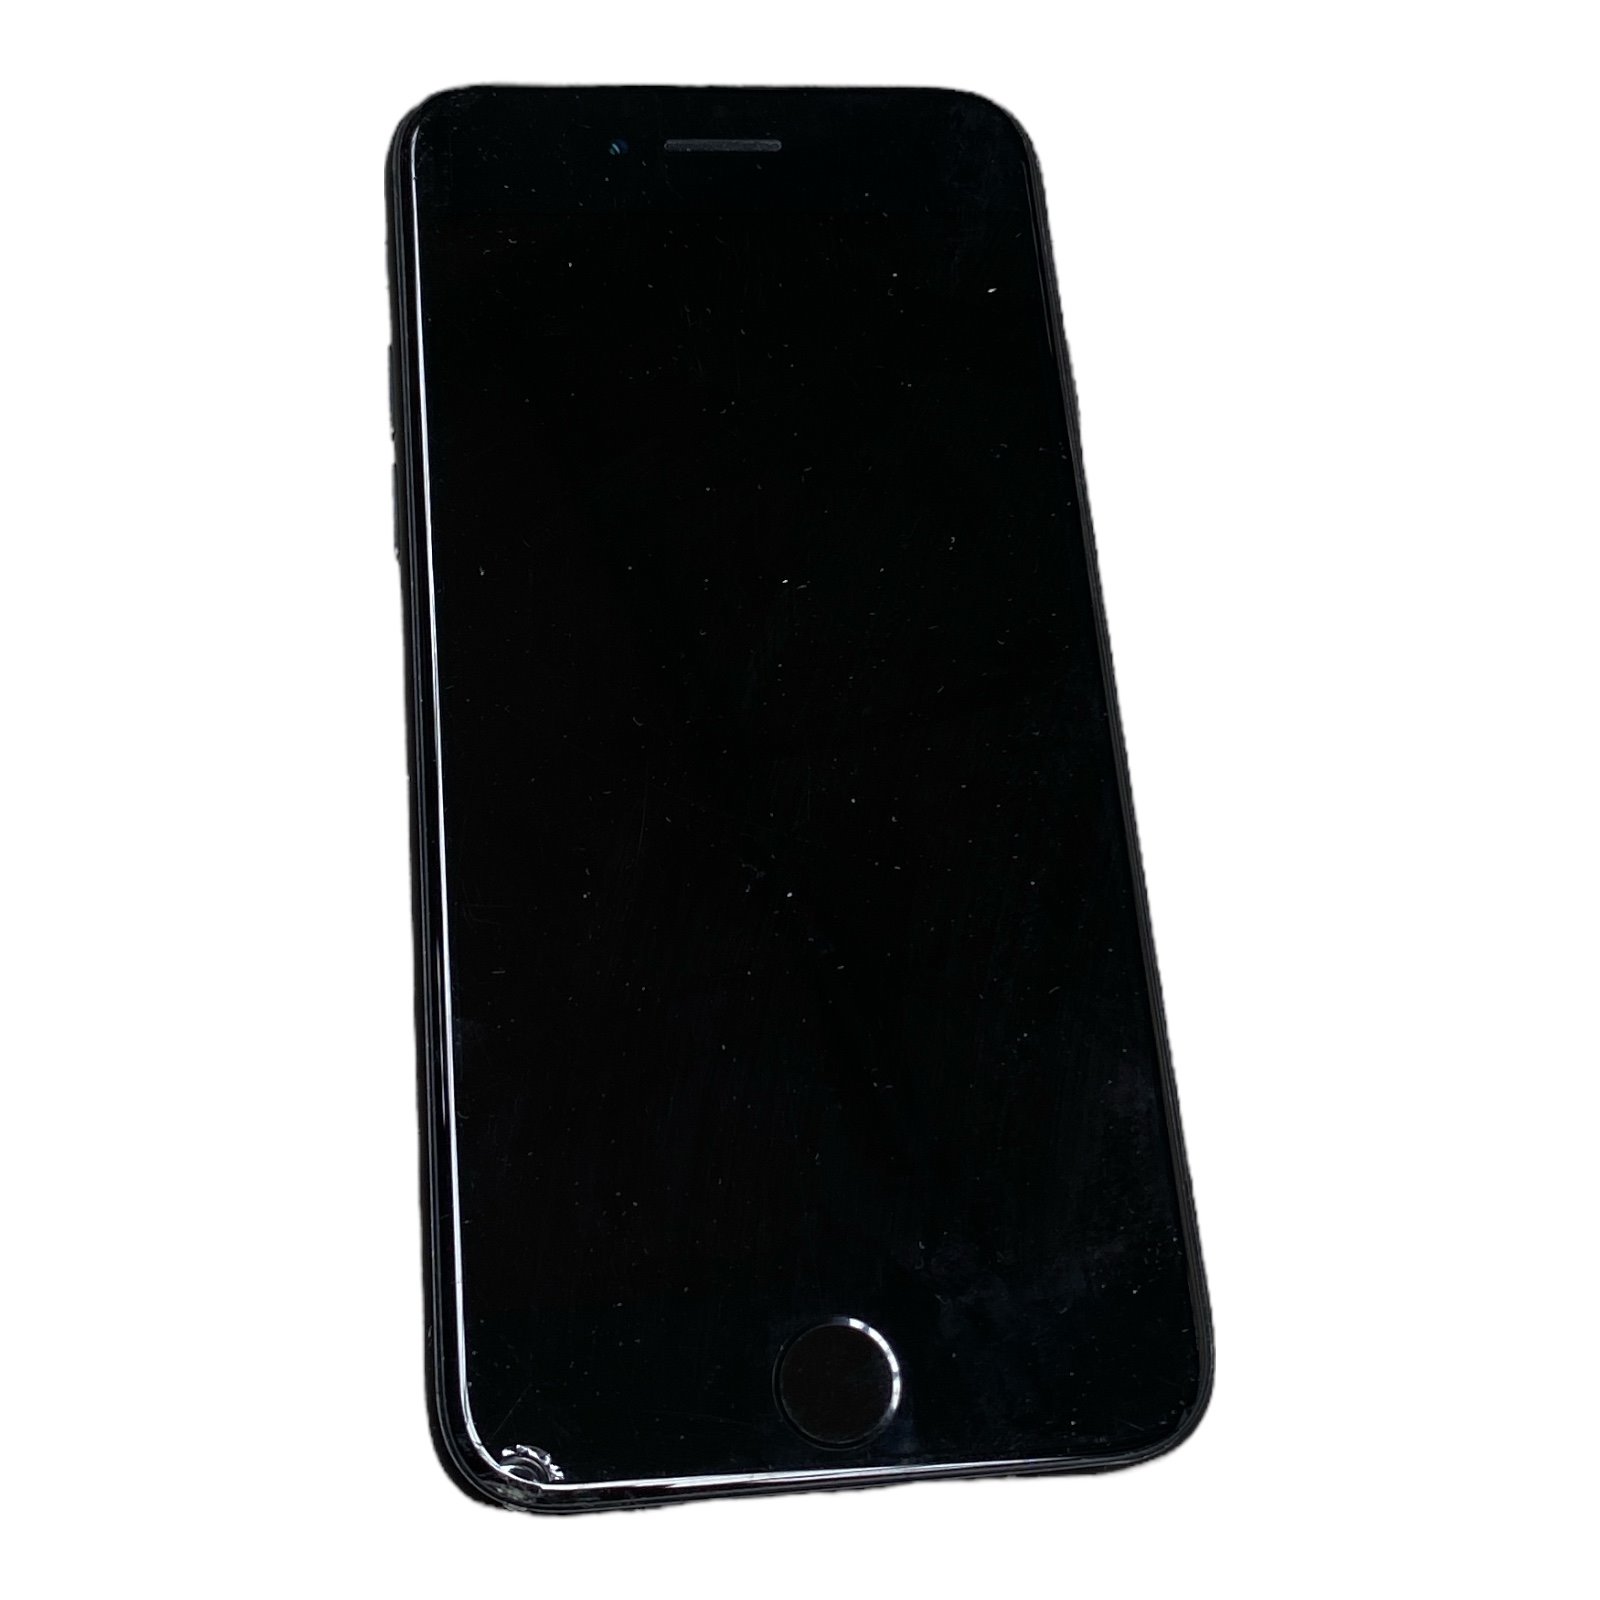 Apple iPhone SE (2nd Gen) Glasbruch C- Ware 256GB Smartphone ohne Ladegerät